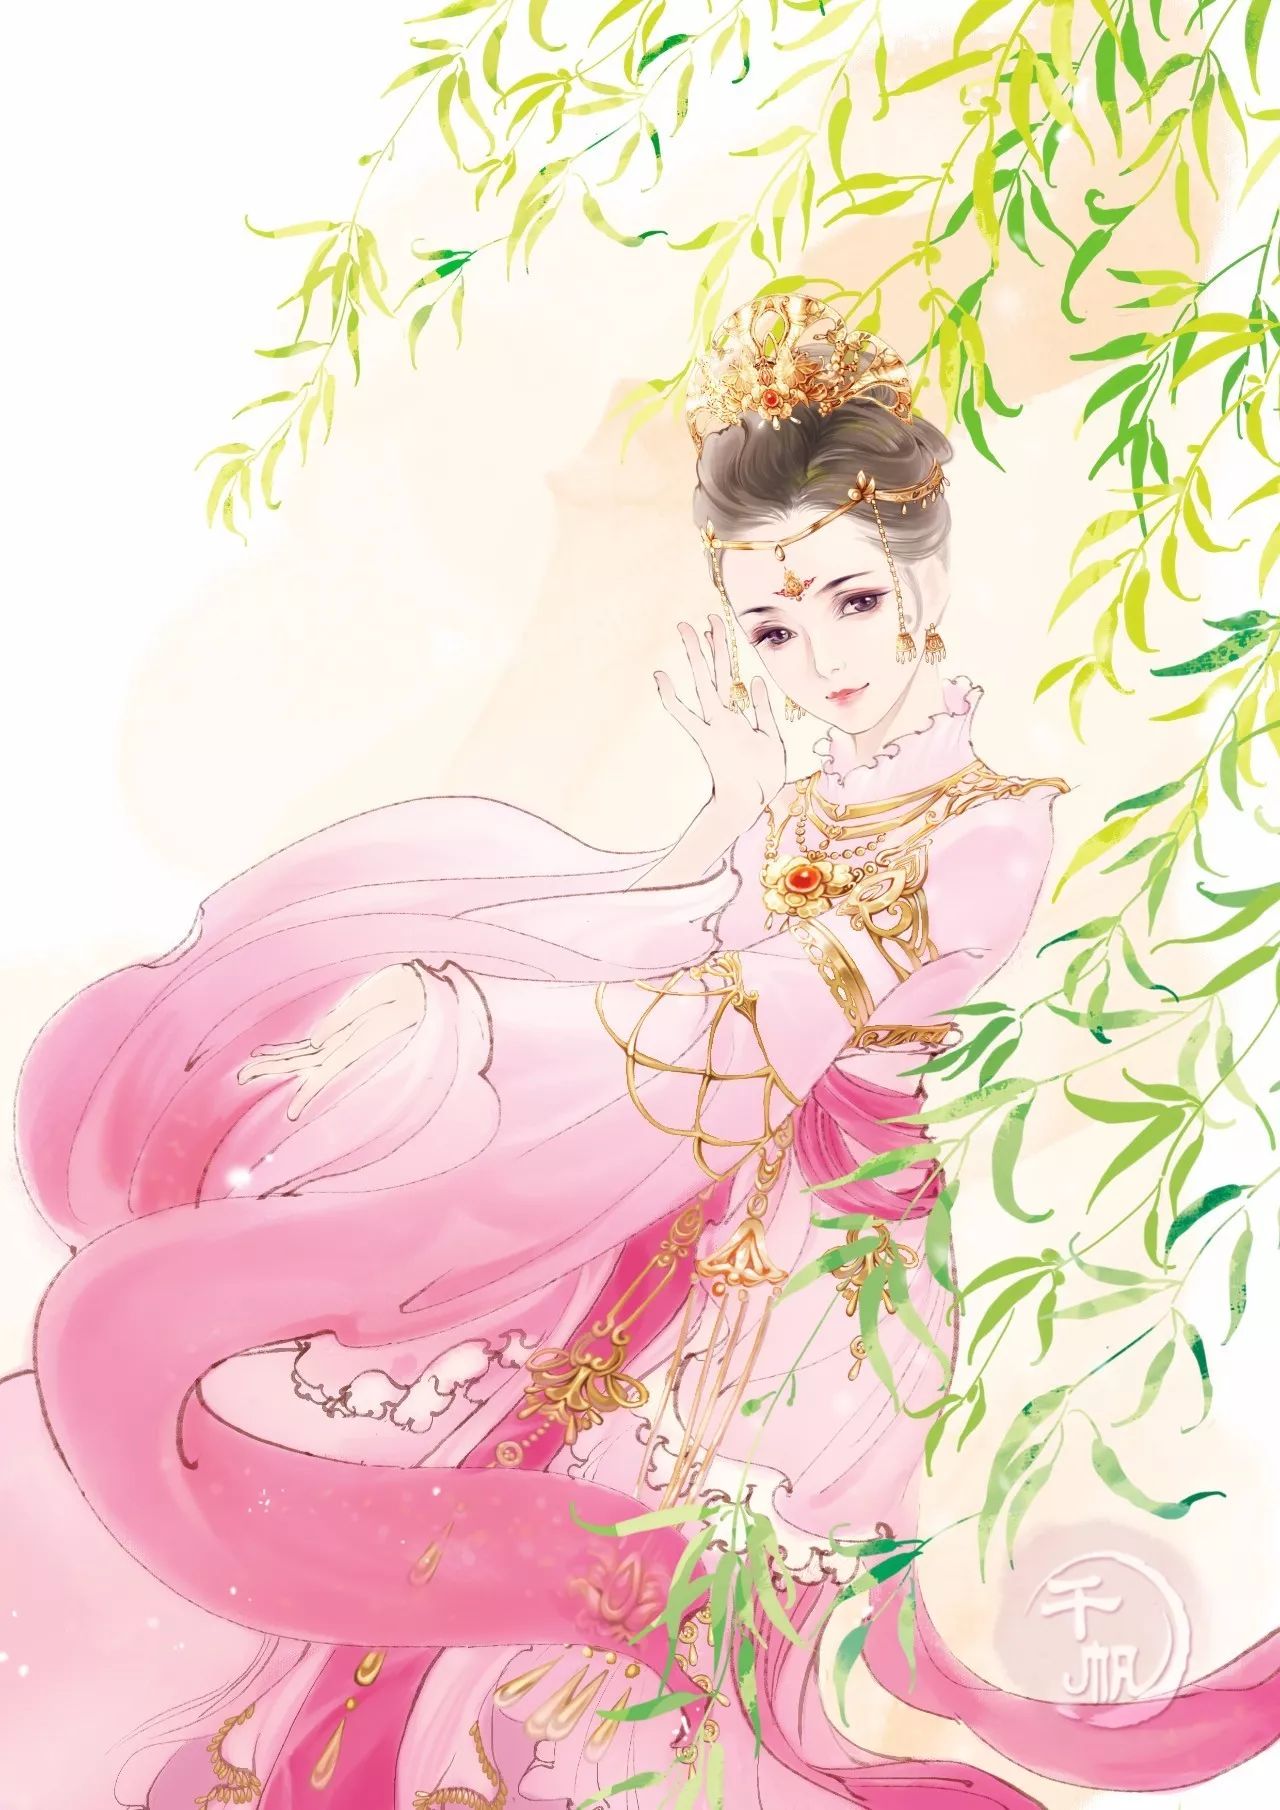 古装影视发型之宋朝贵族女子造型